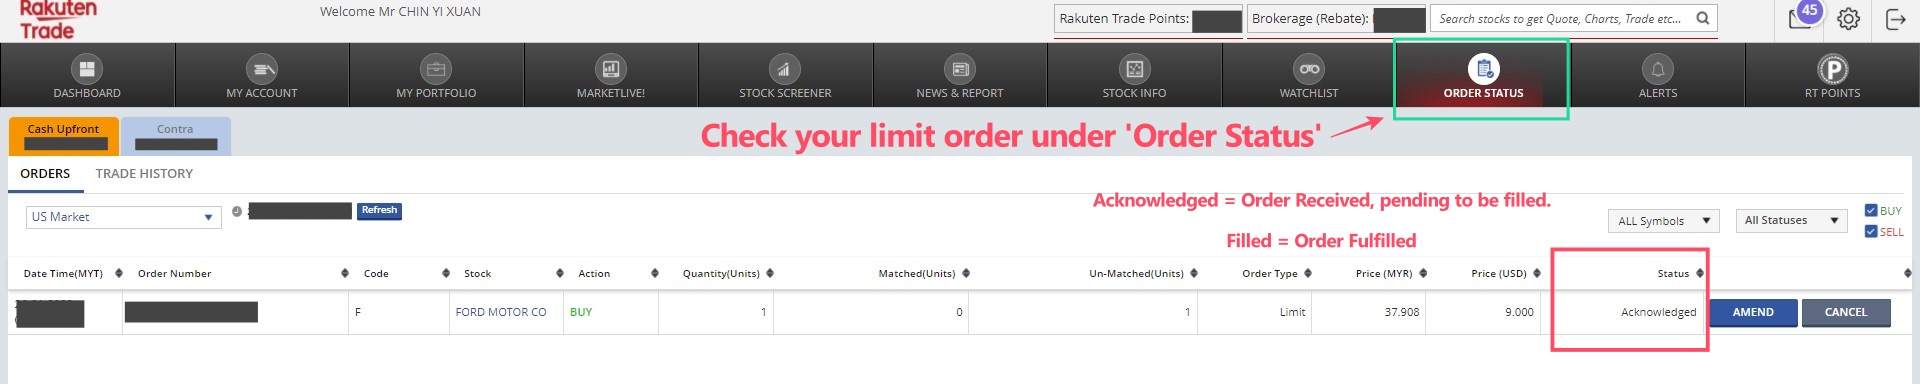 How to buy US stocks on Rakuten Trade (check order status)